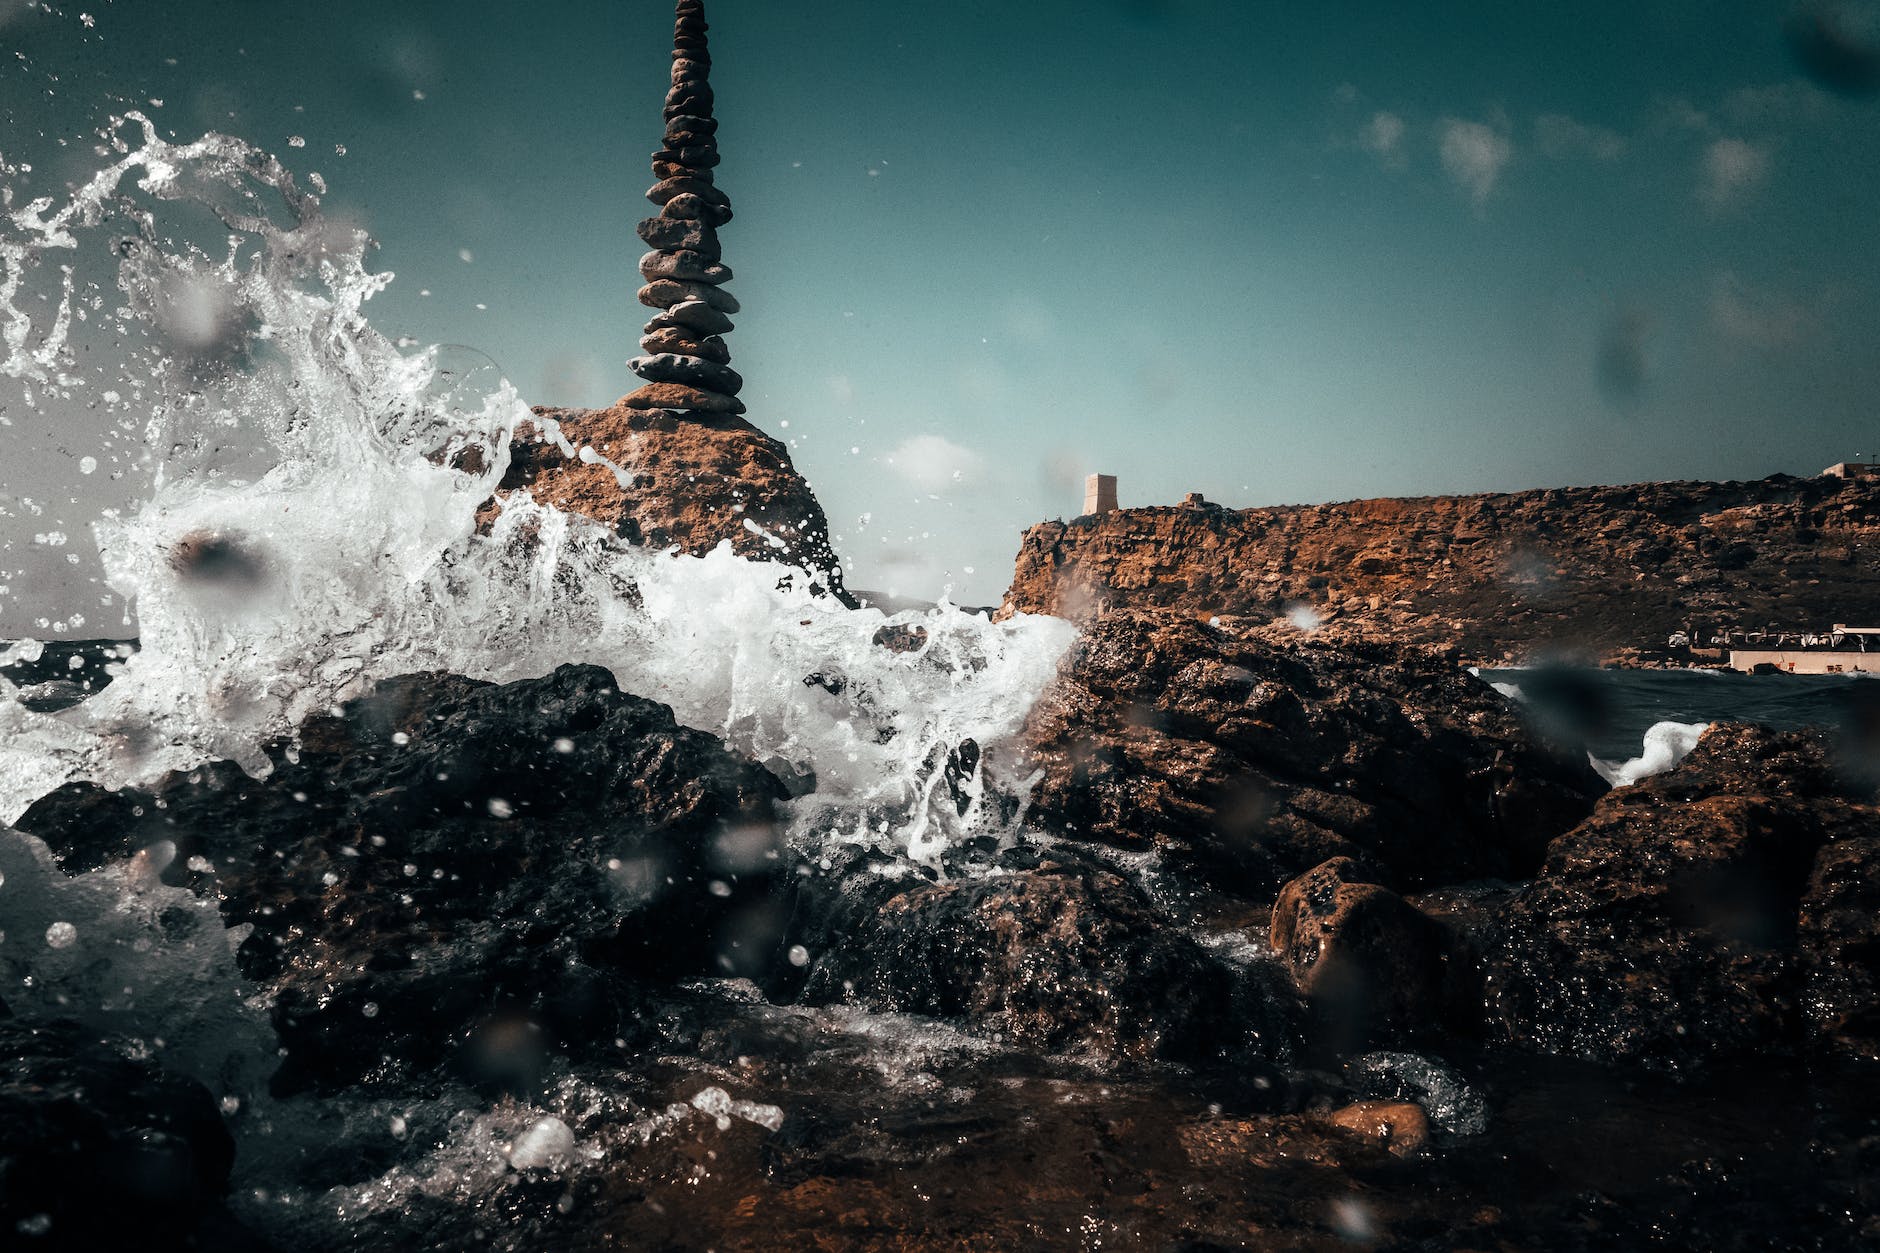 ocean water splashing on rocks Malta Digital Nomad Visa